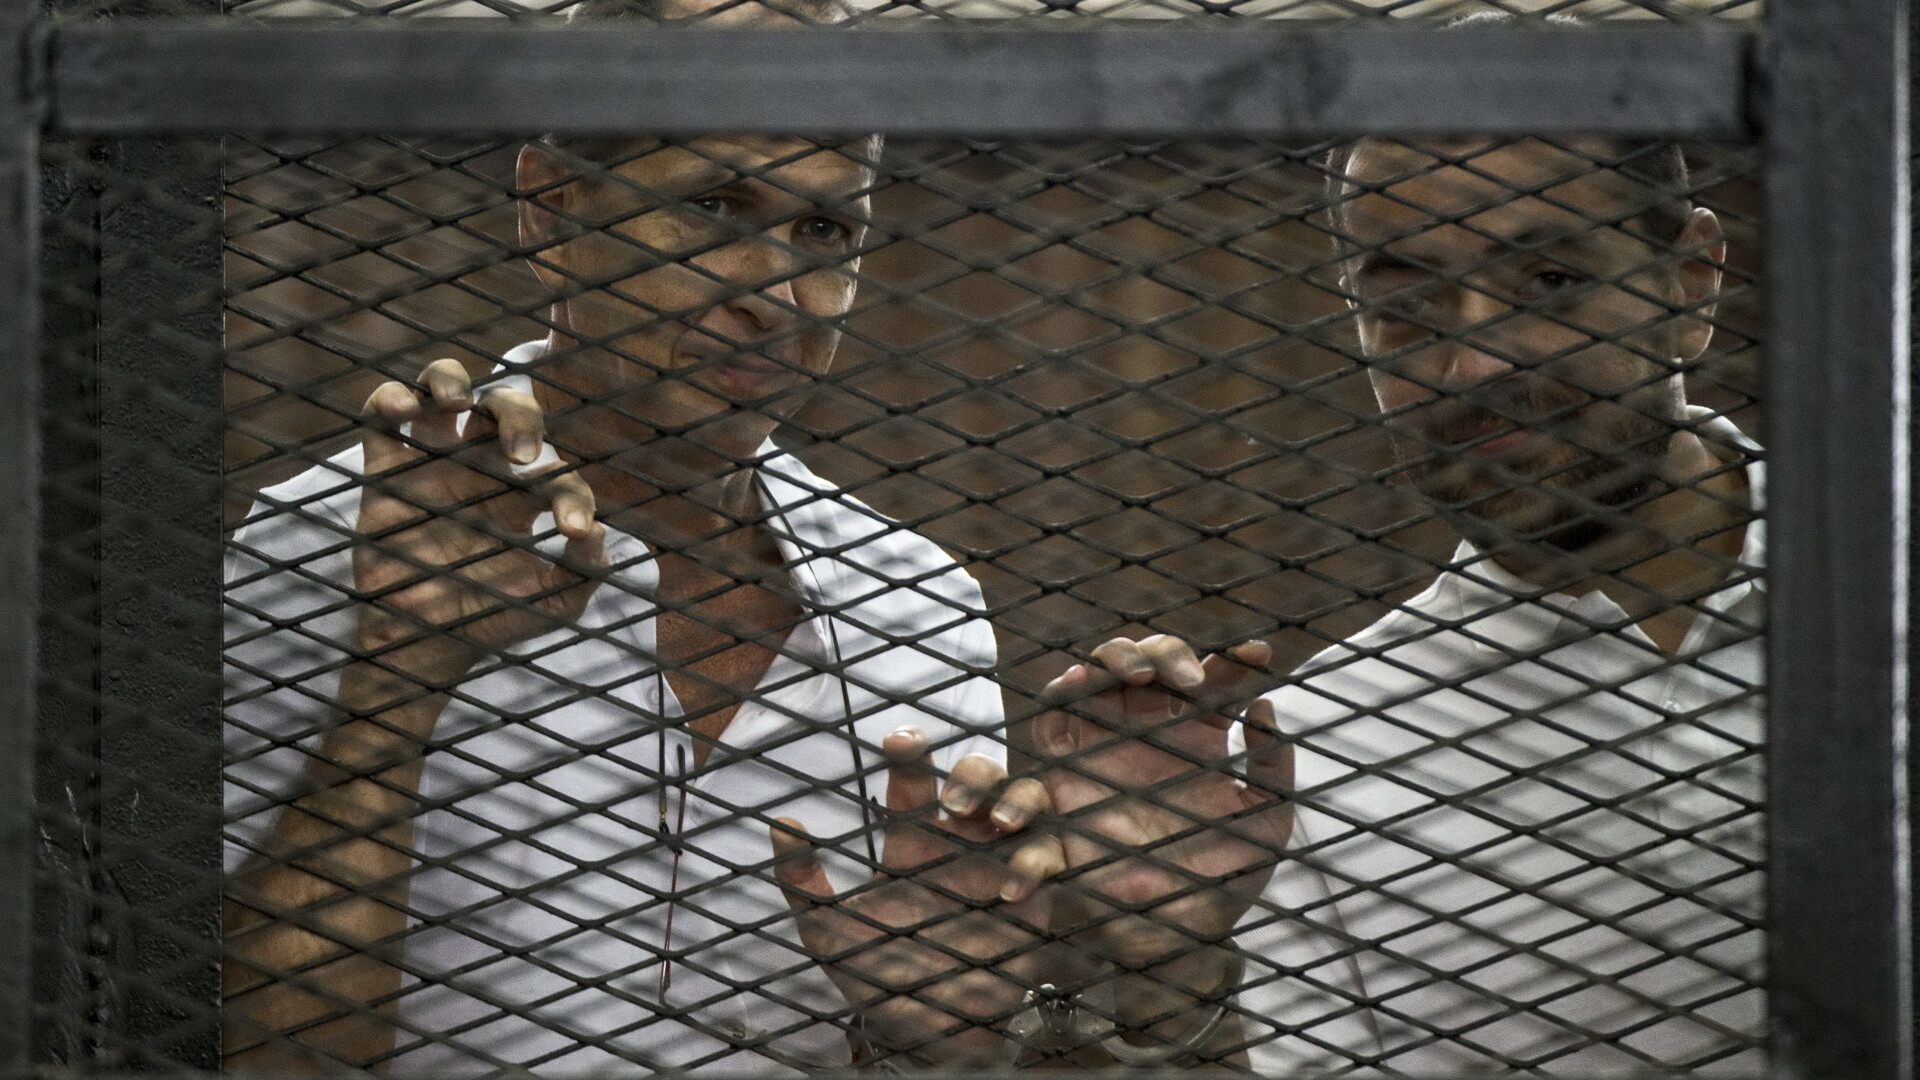 Jurnalisti detinuti in Egipt